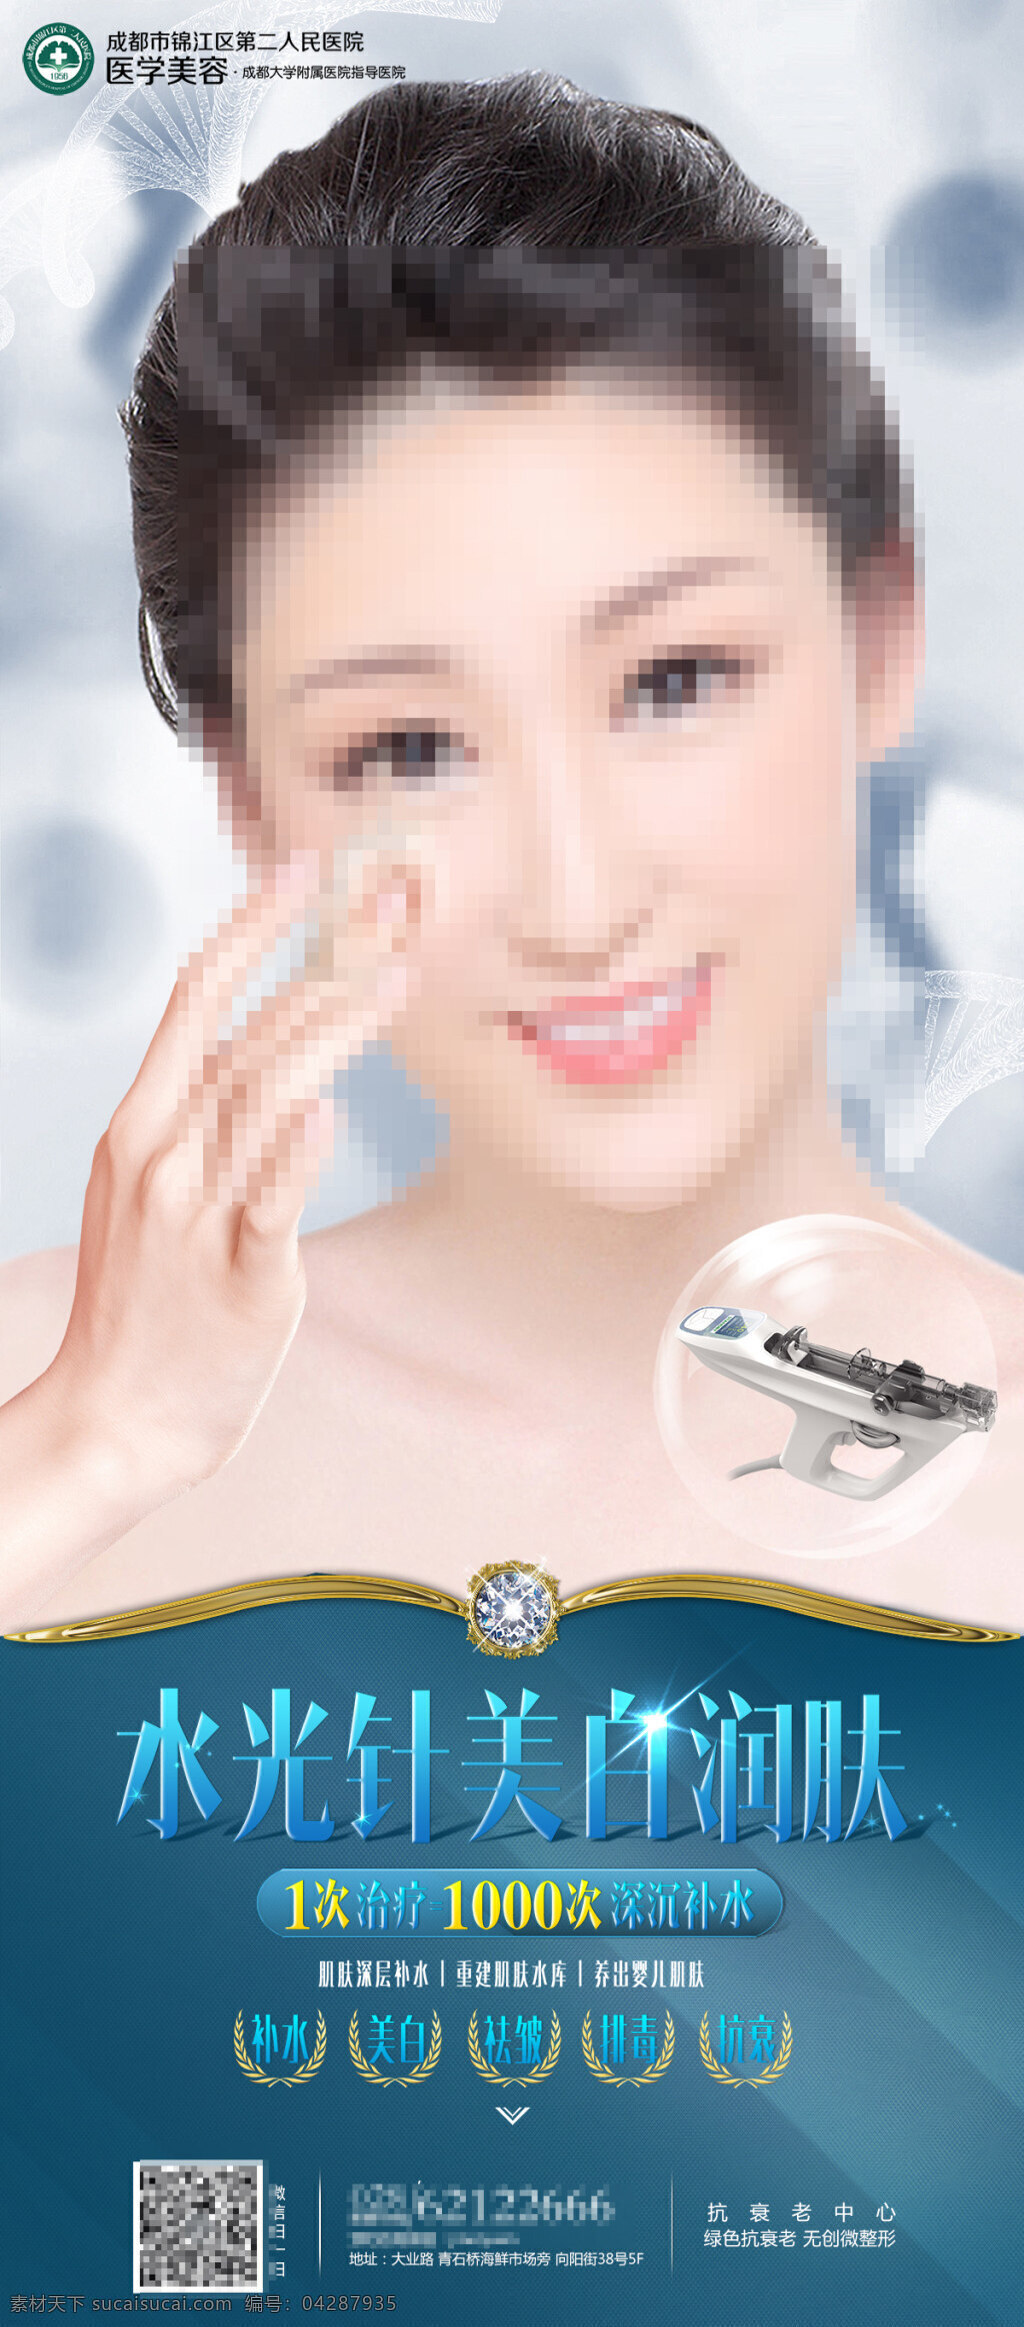 水光 针 美白 润肤 美女 美容 整形 注射 水光针 润肤产品广告 白色